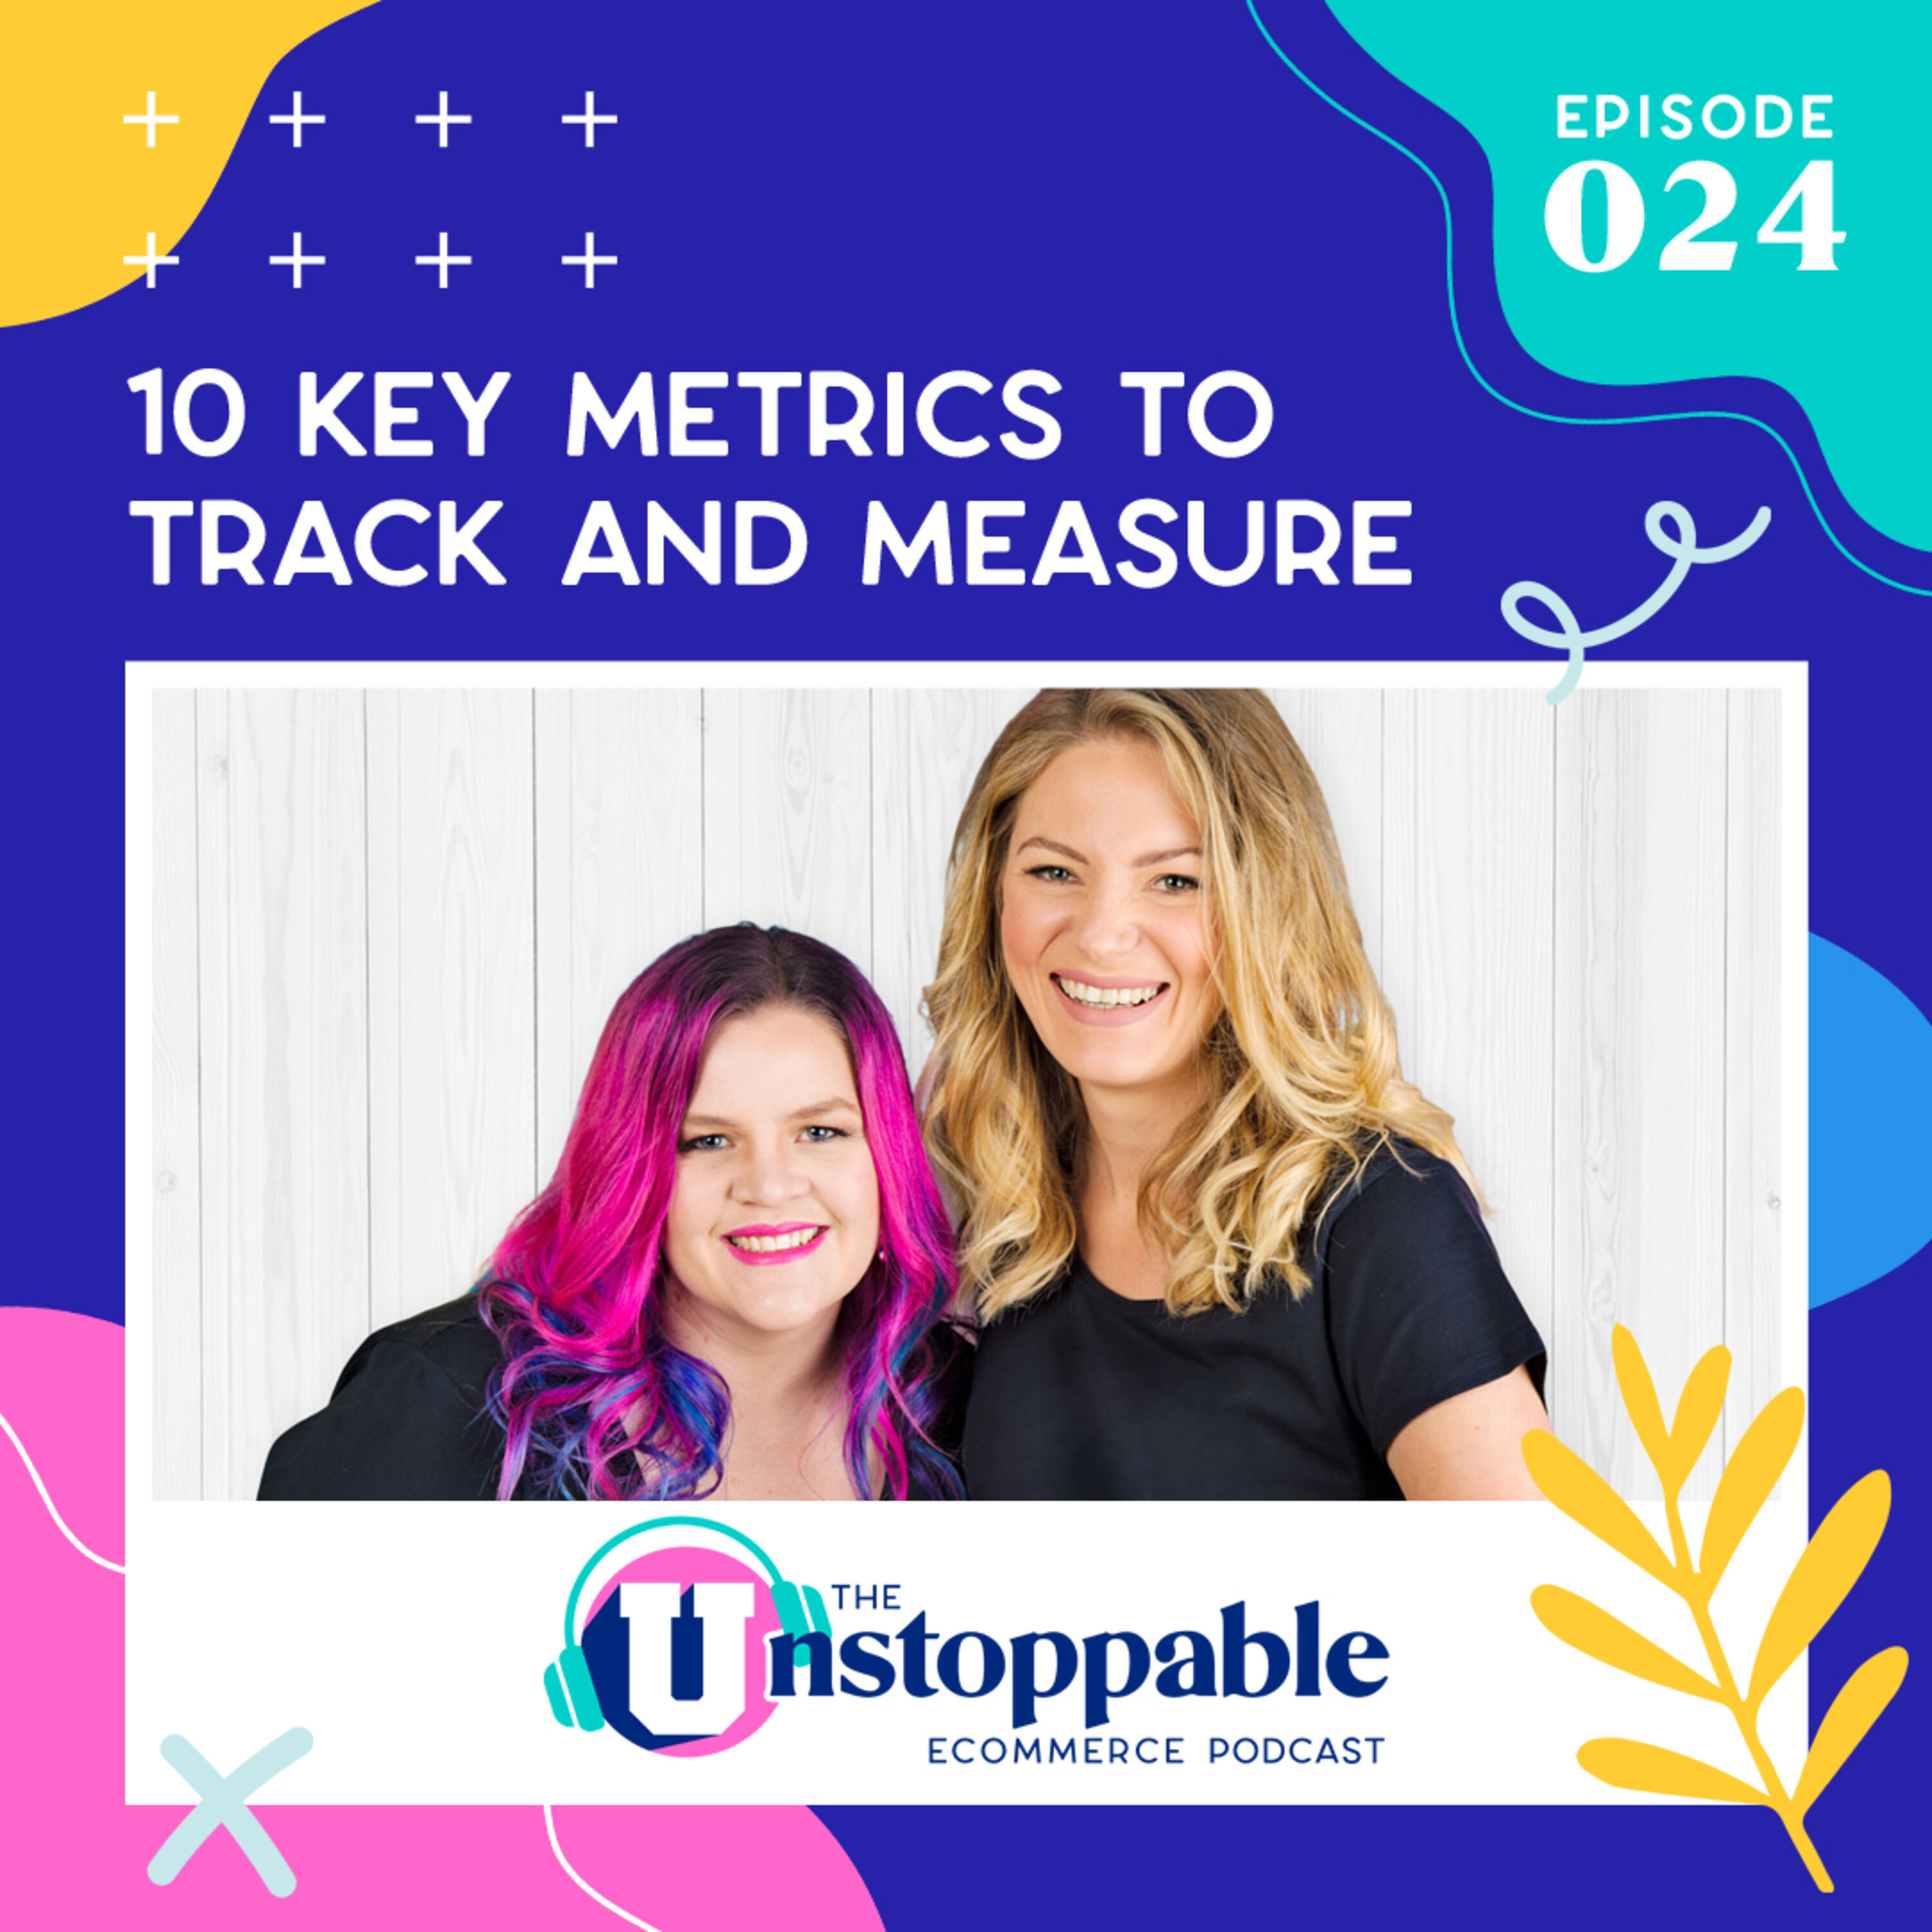 10 Key Metrics to Track and Measure